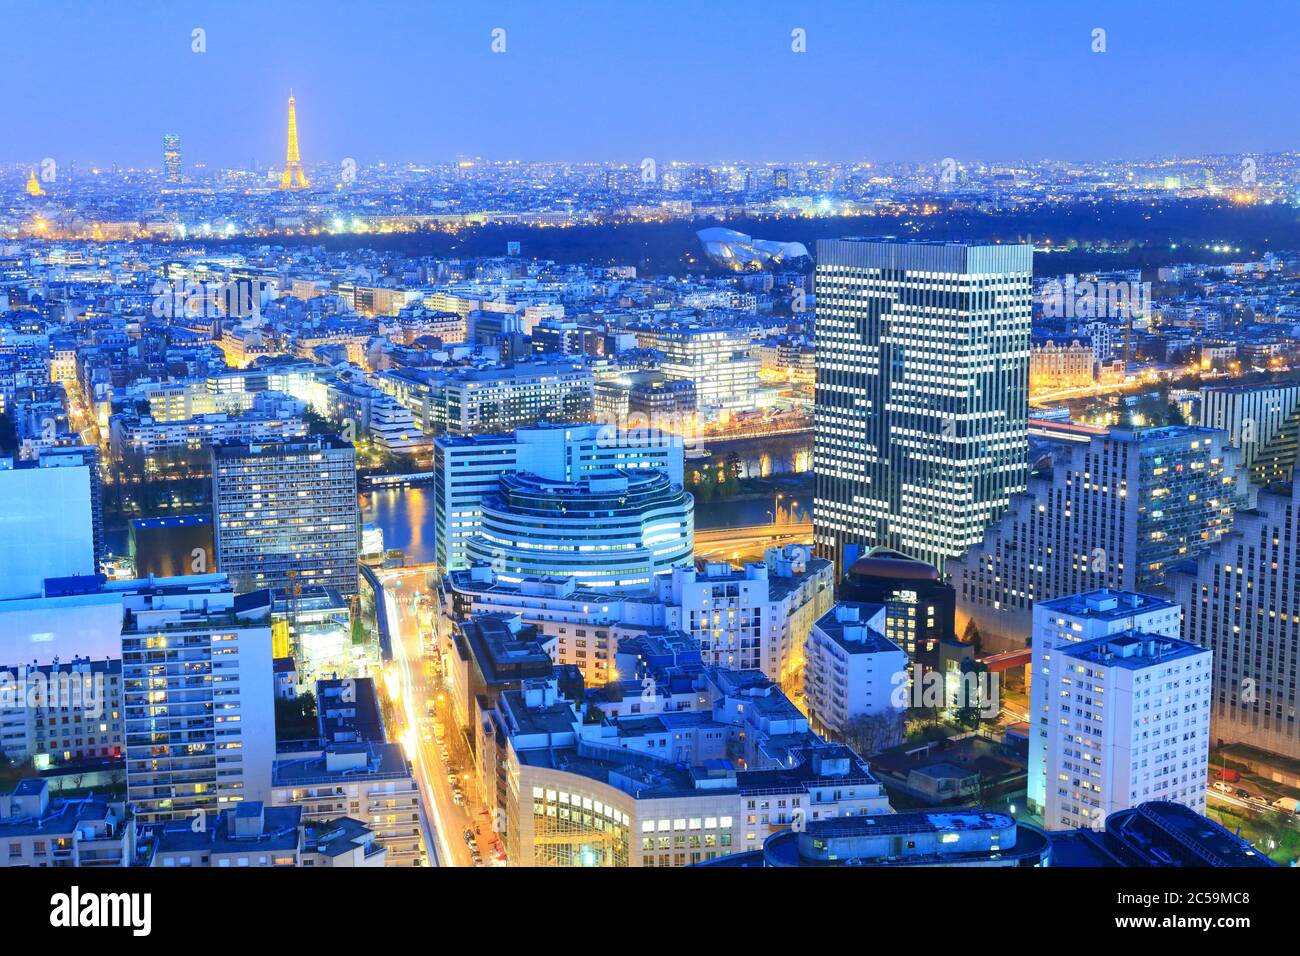 Louis Vuitton Building Avenue Des Champsélysées Paris France At Night Stock  Photo - Download Image Now - iStock